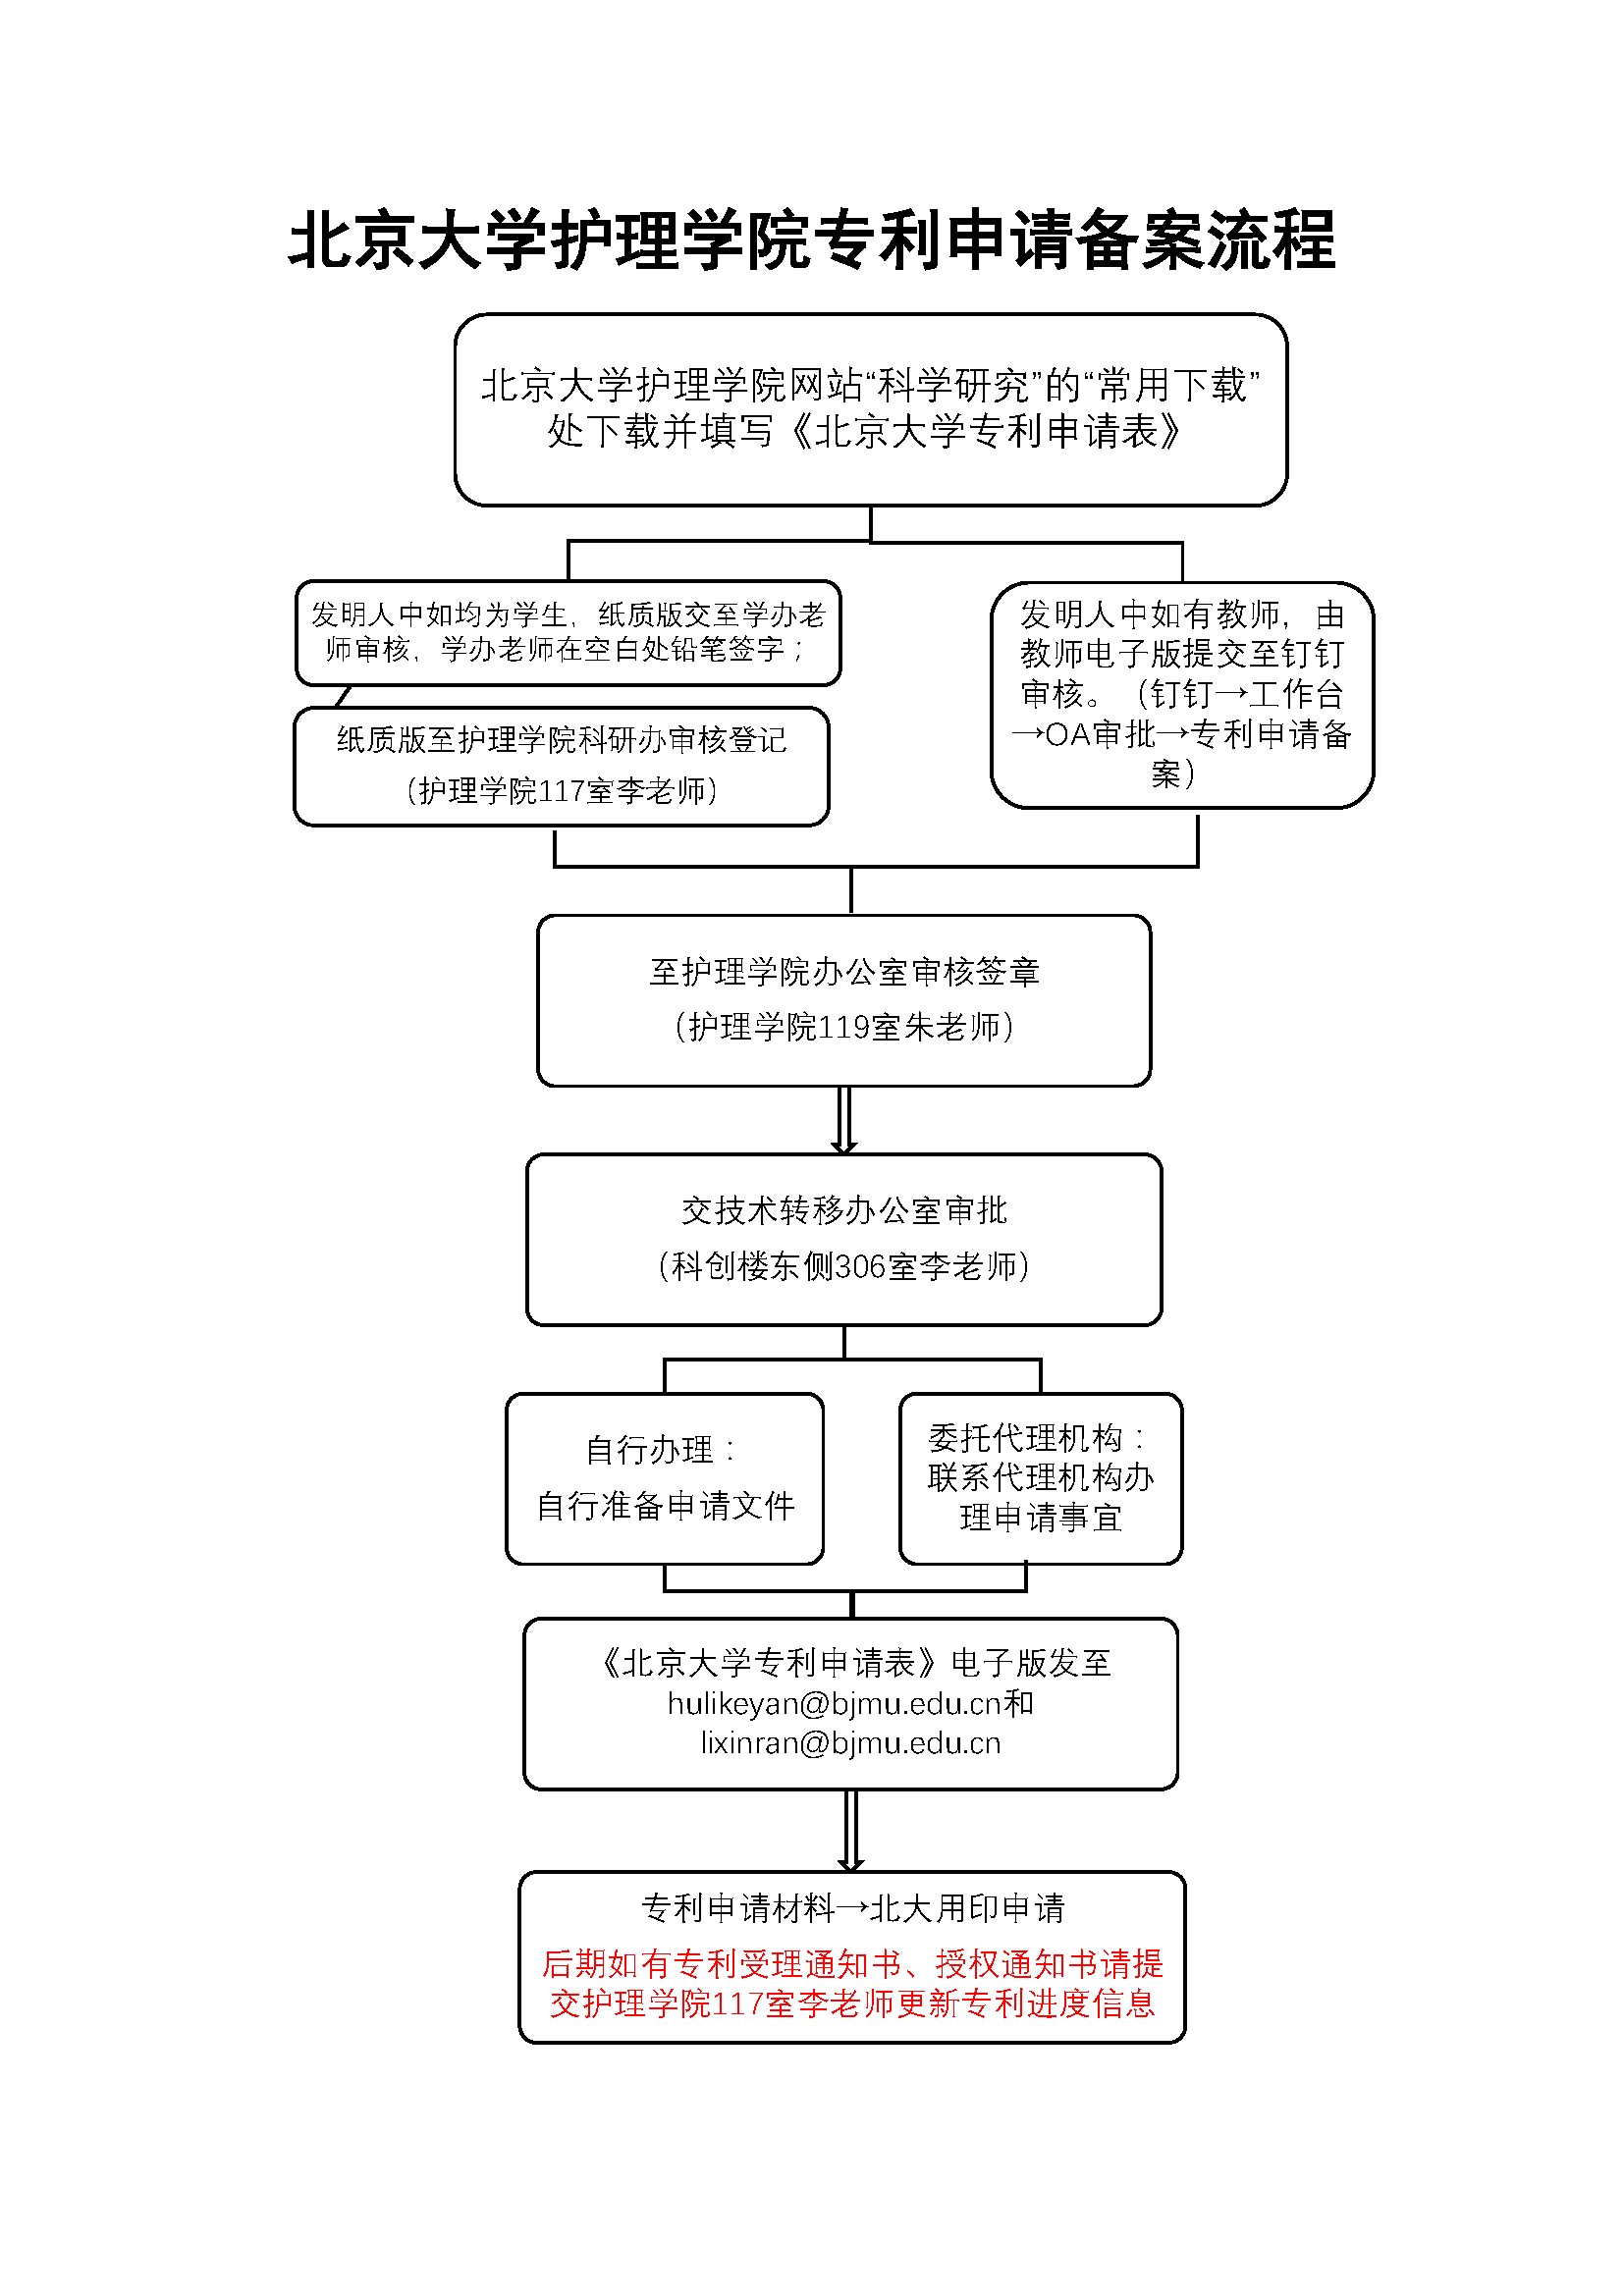 新葡的京集团35222vip专利申请备案流程.png